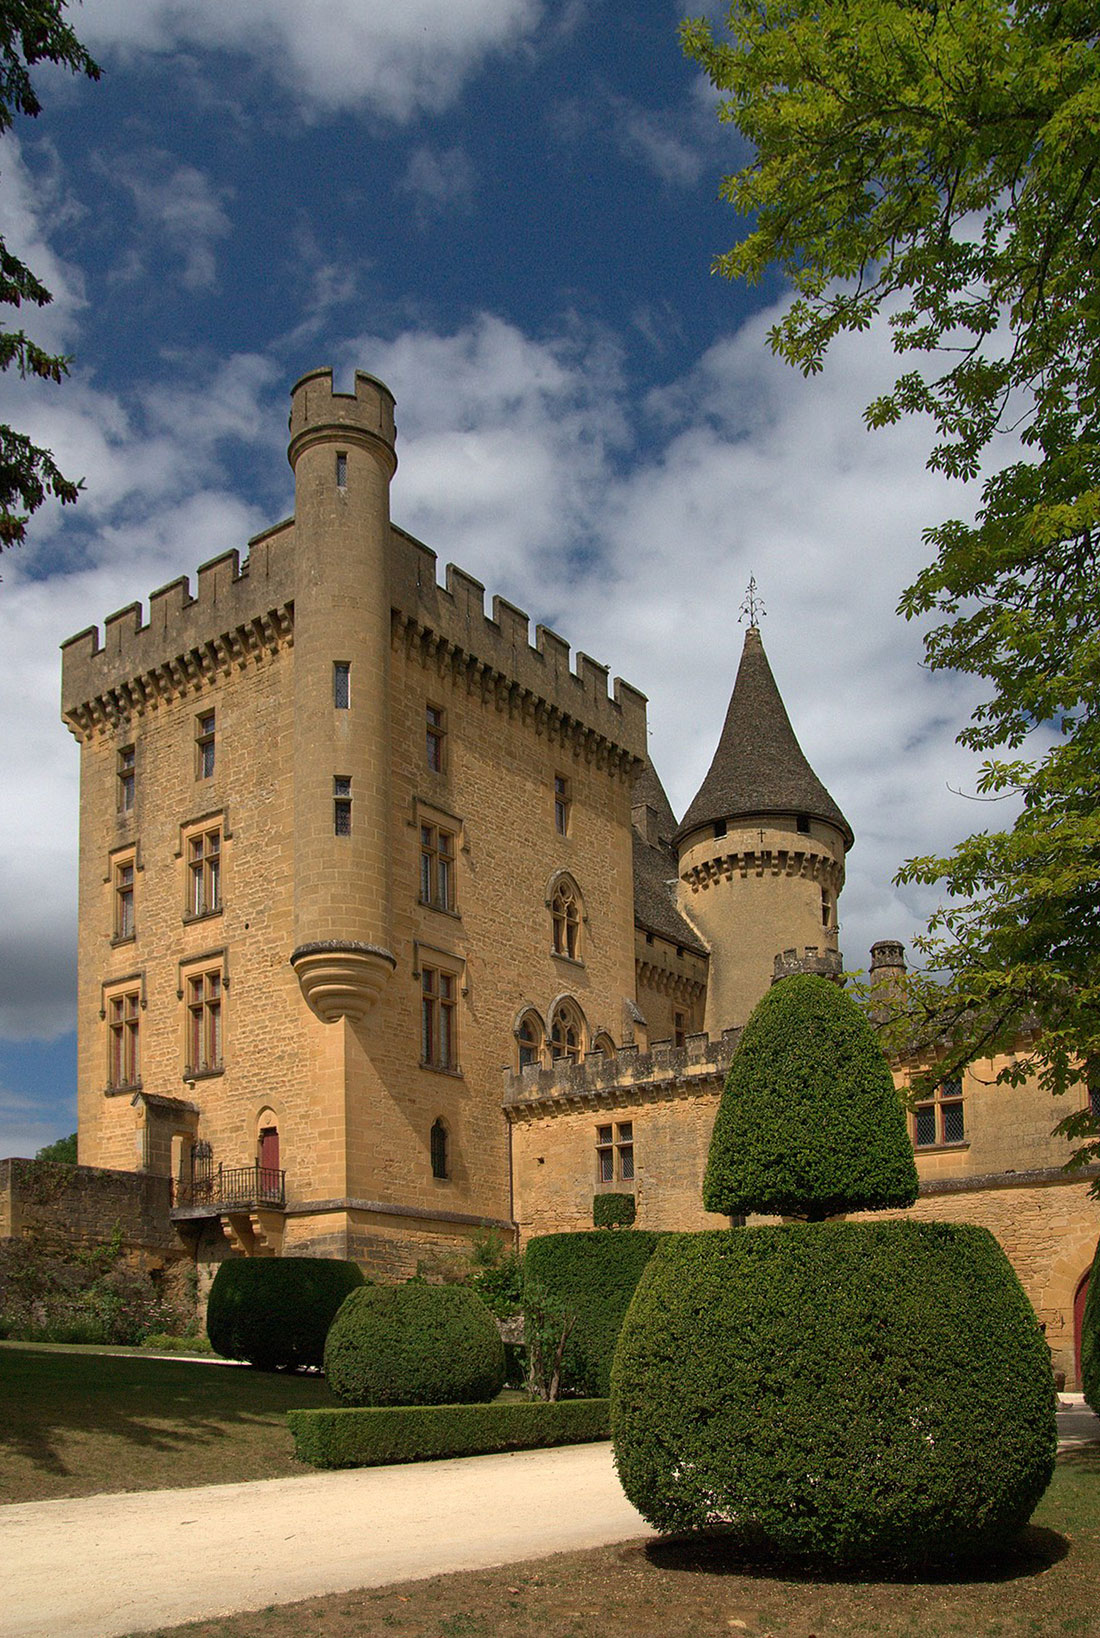 Château de Puymartin